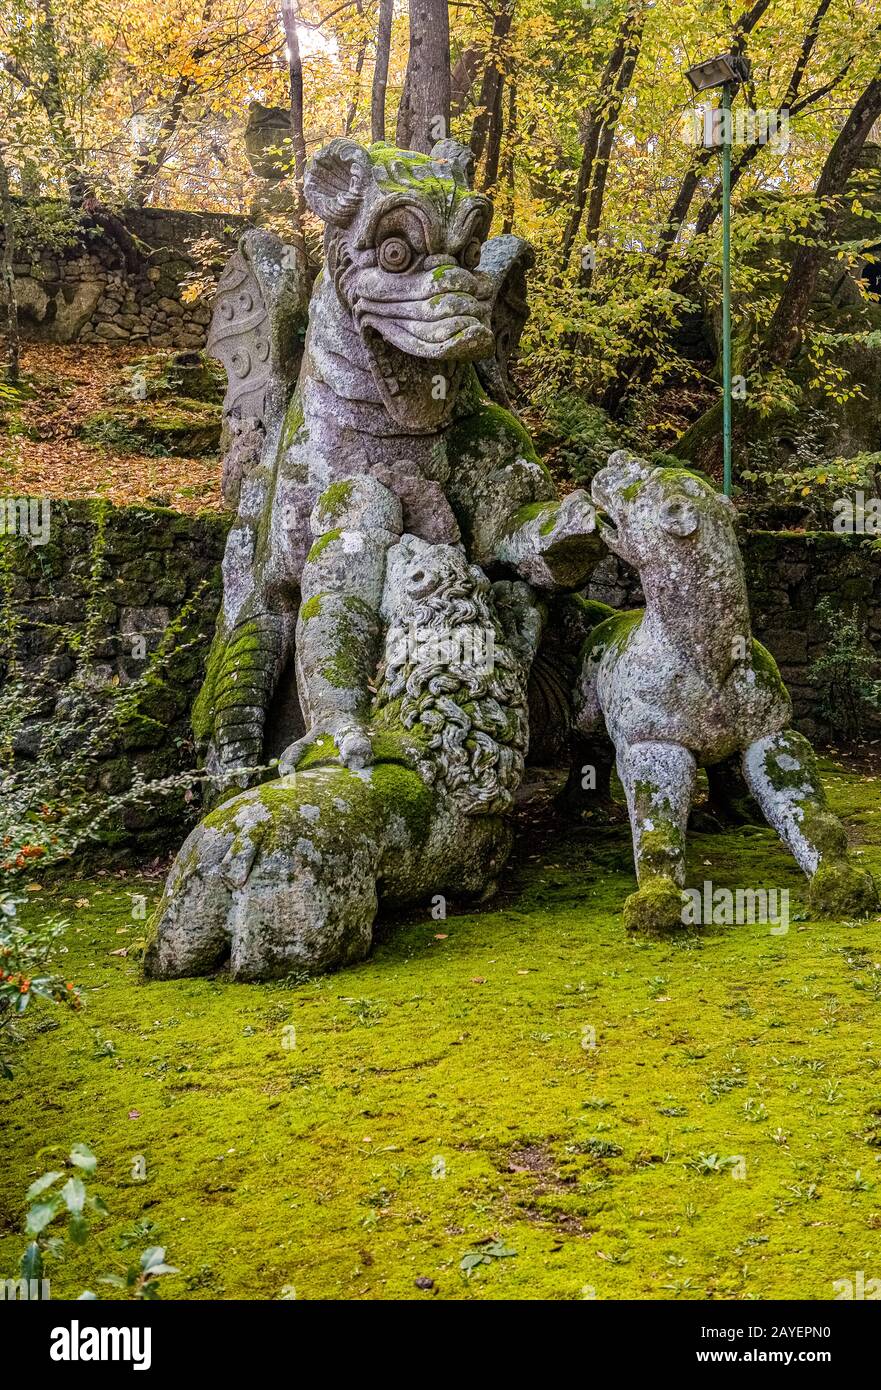 Italie, Latium, le jardin de Bomarzo de Monster ( Giardino Dei Mostri ) - Dragon lutte contre un chien, un loup, un lion Banque D'Images